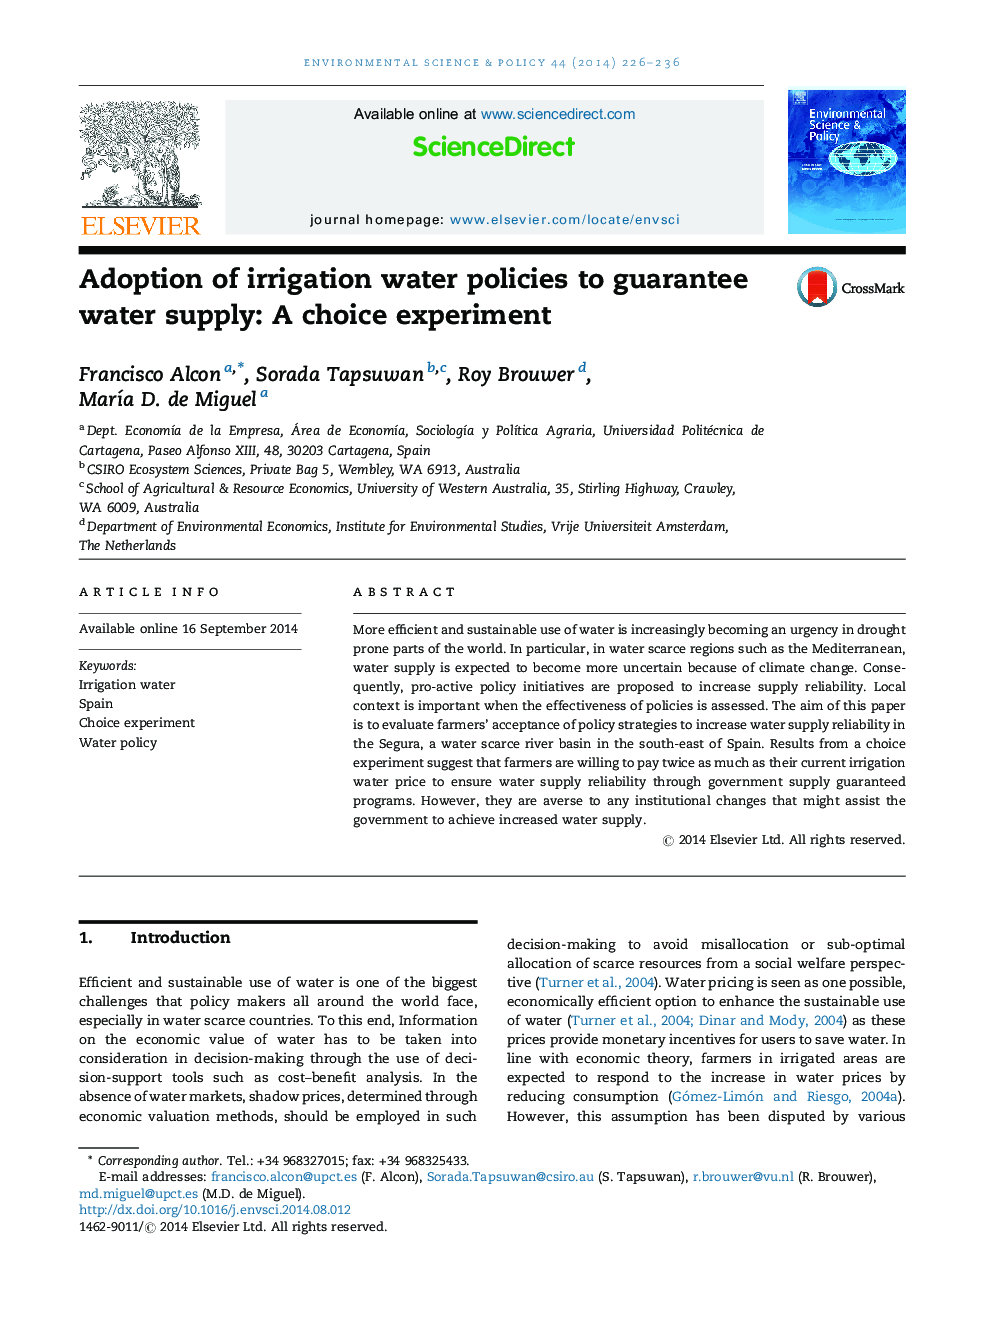 تصویب سیاست های آب آشامیدنی برای تضمین تامین آب: یک آزمایش انتخابی 